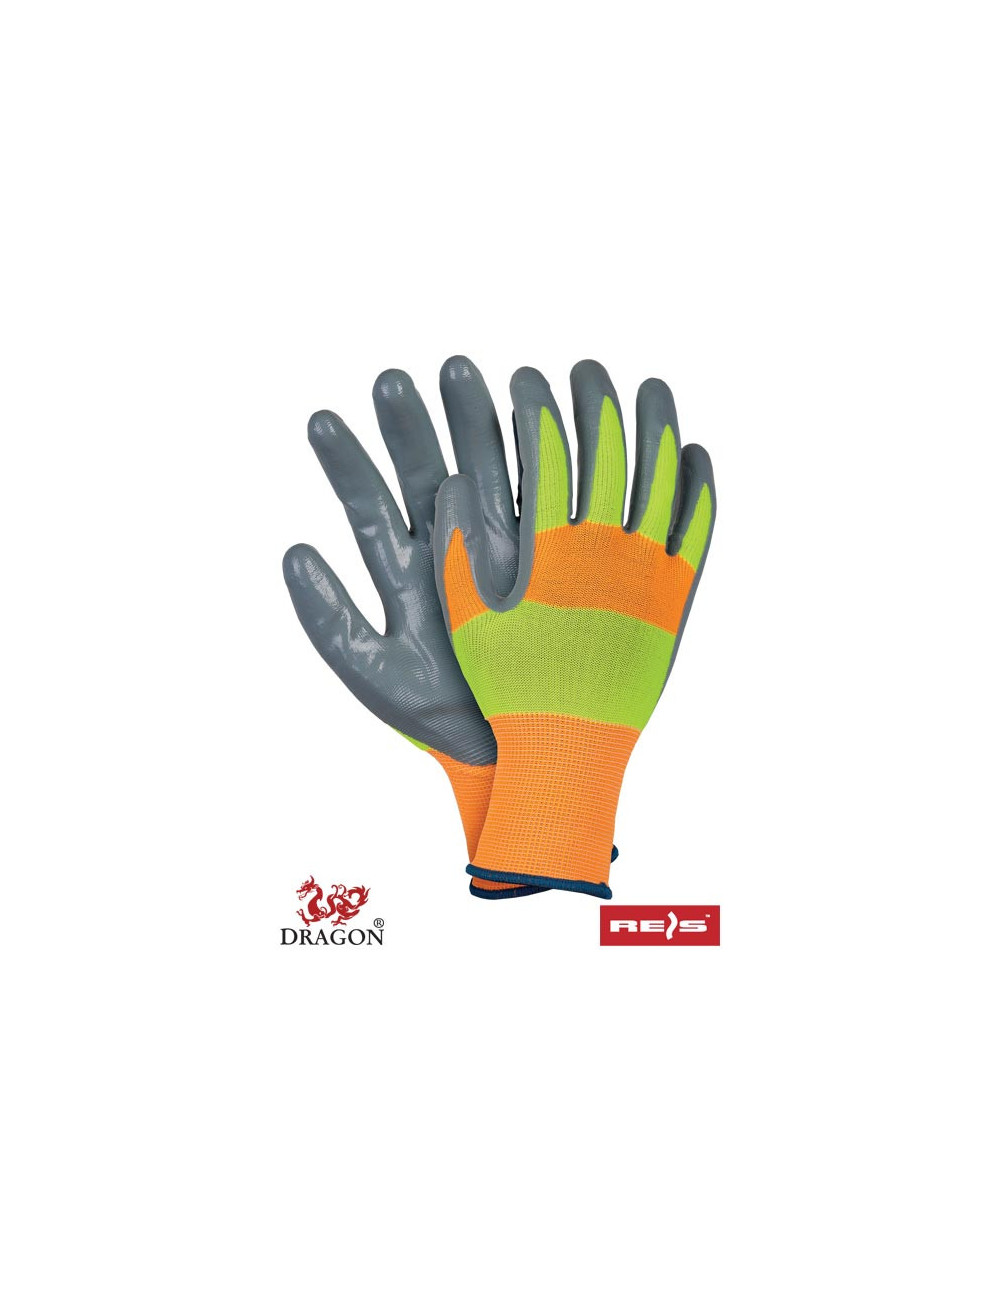 Protective gloves strada pys orange-yellow-gray Reis